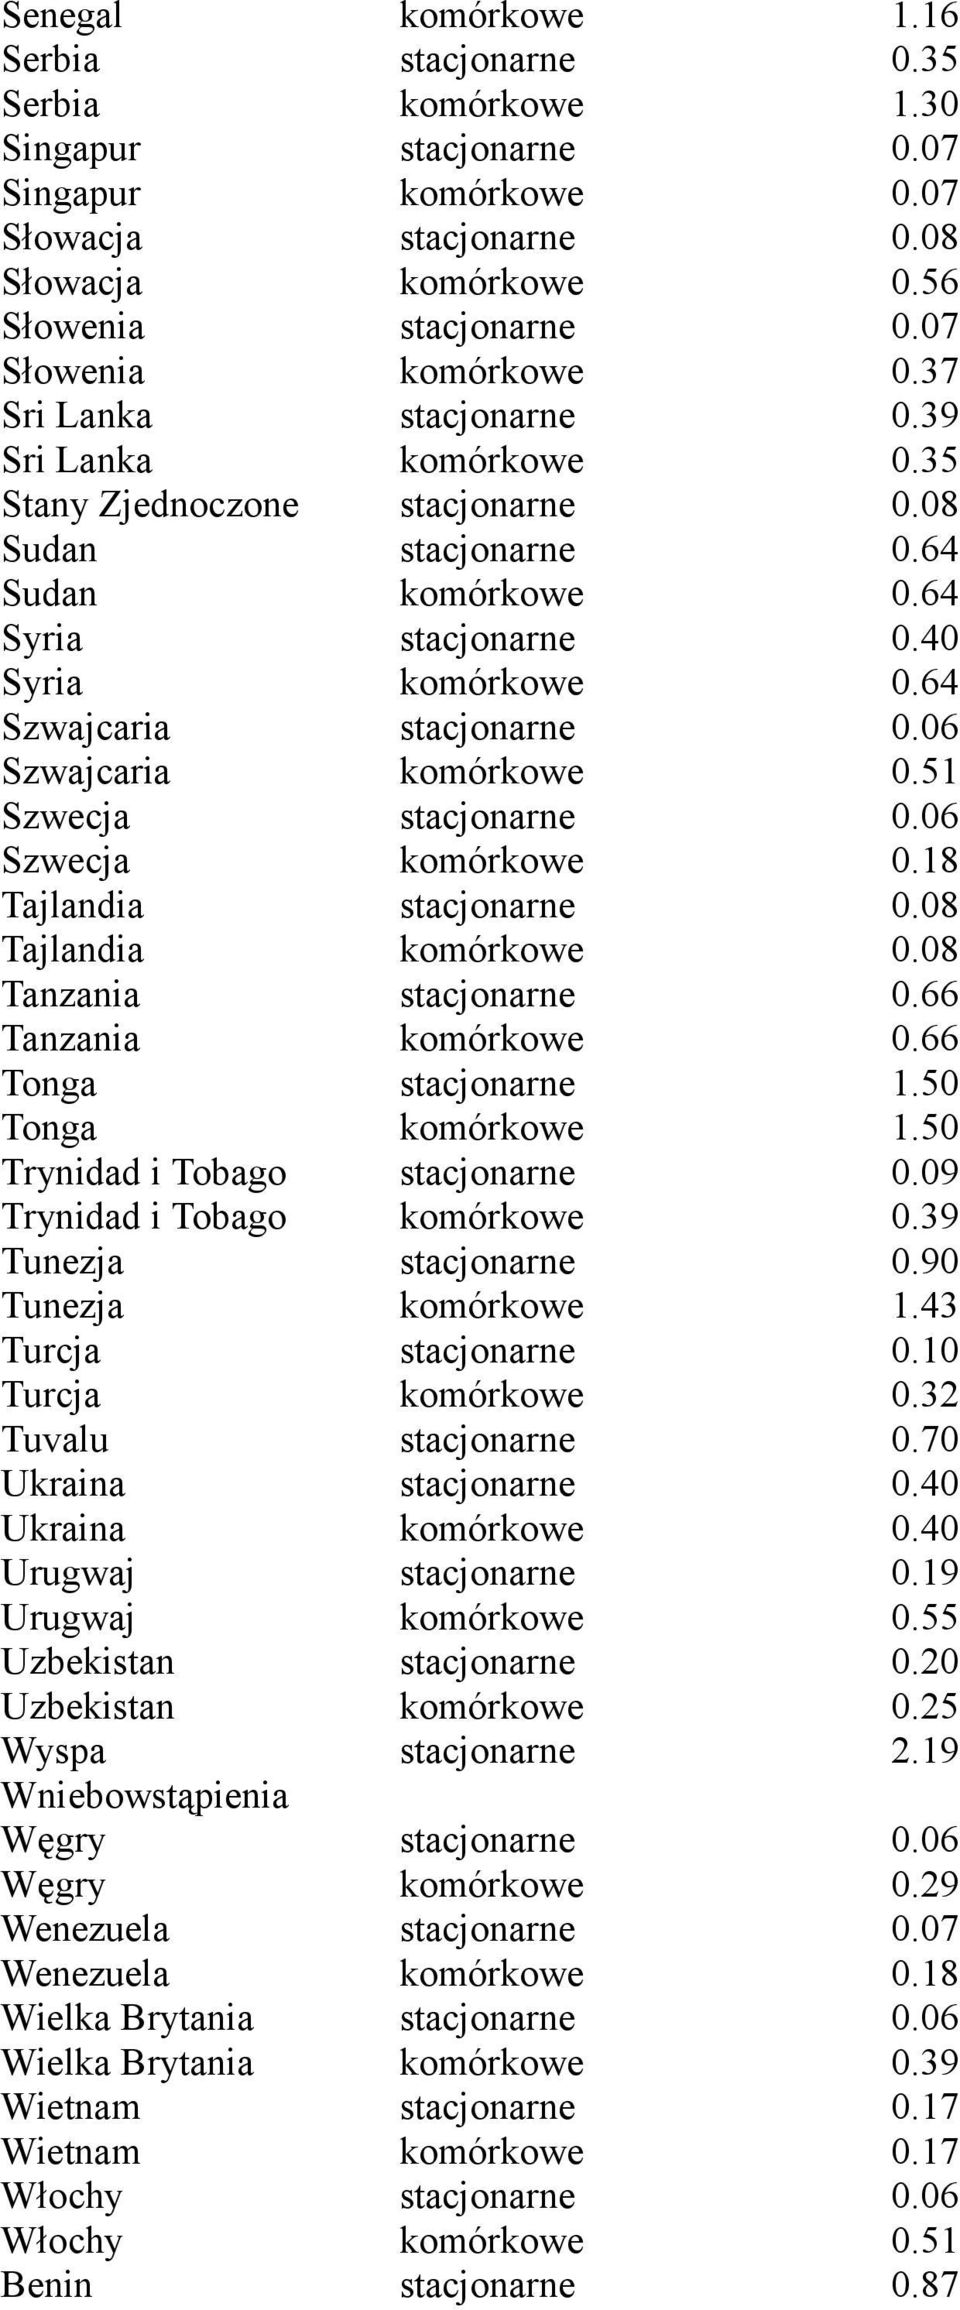 64 Szwajcaria stacjonarne 0.06 Szwajcaria komórkowe 0.51 Szwecja stacjonarne 0.06 Szwecja komórkowe 0.18 Tajlandia stacjonarne 0.08 Tajlandia komórkowe 0.08 Tanzania stacjonarne 0.